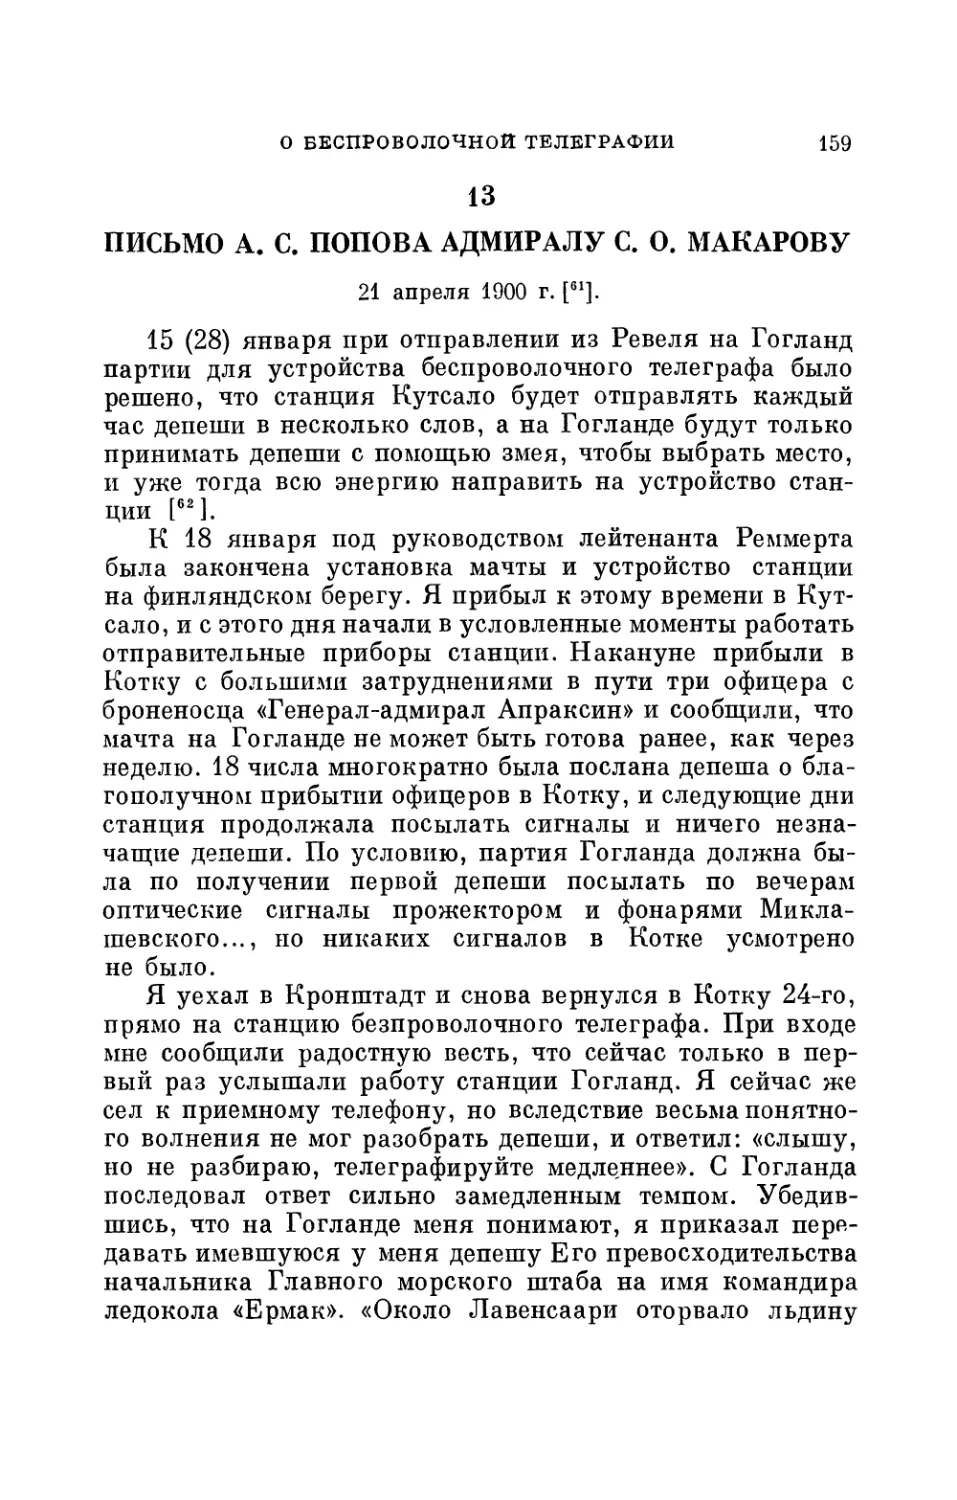 13. Письмо А. С. Попова адмиралу С. О. Макарову. 21 апреля 1900 г.